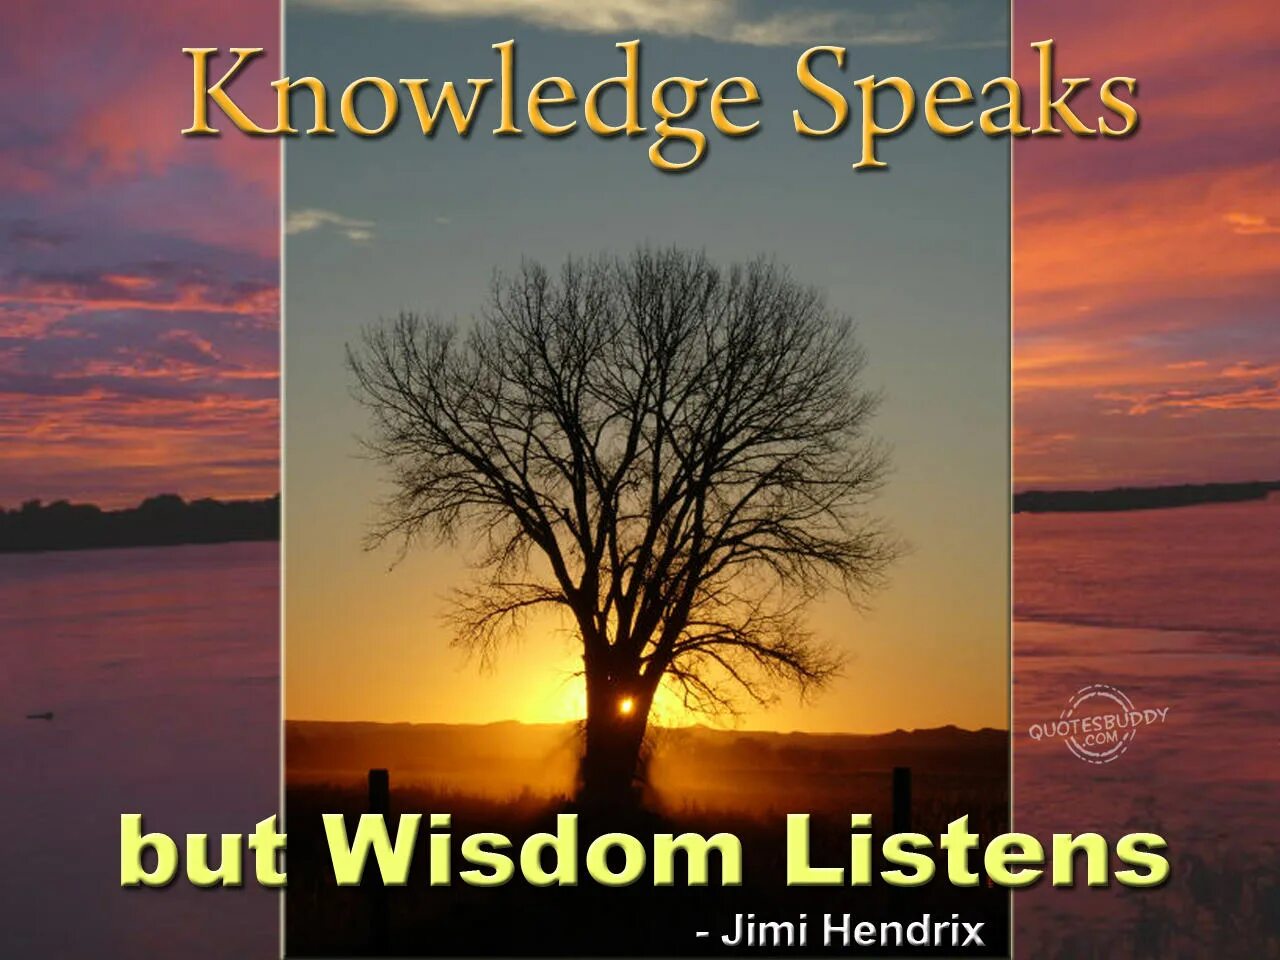 Wisdom перевод на русский. Wisdom фото. Knowledge speaks Wisdom listens. Knowledge speaks, but Wisdom listens.. Knowledge speaks, but Wisdom listens meaning.